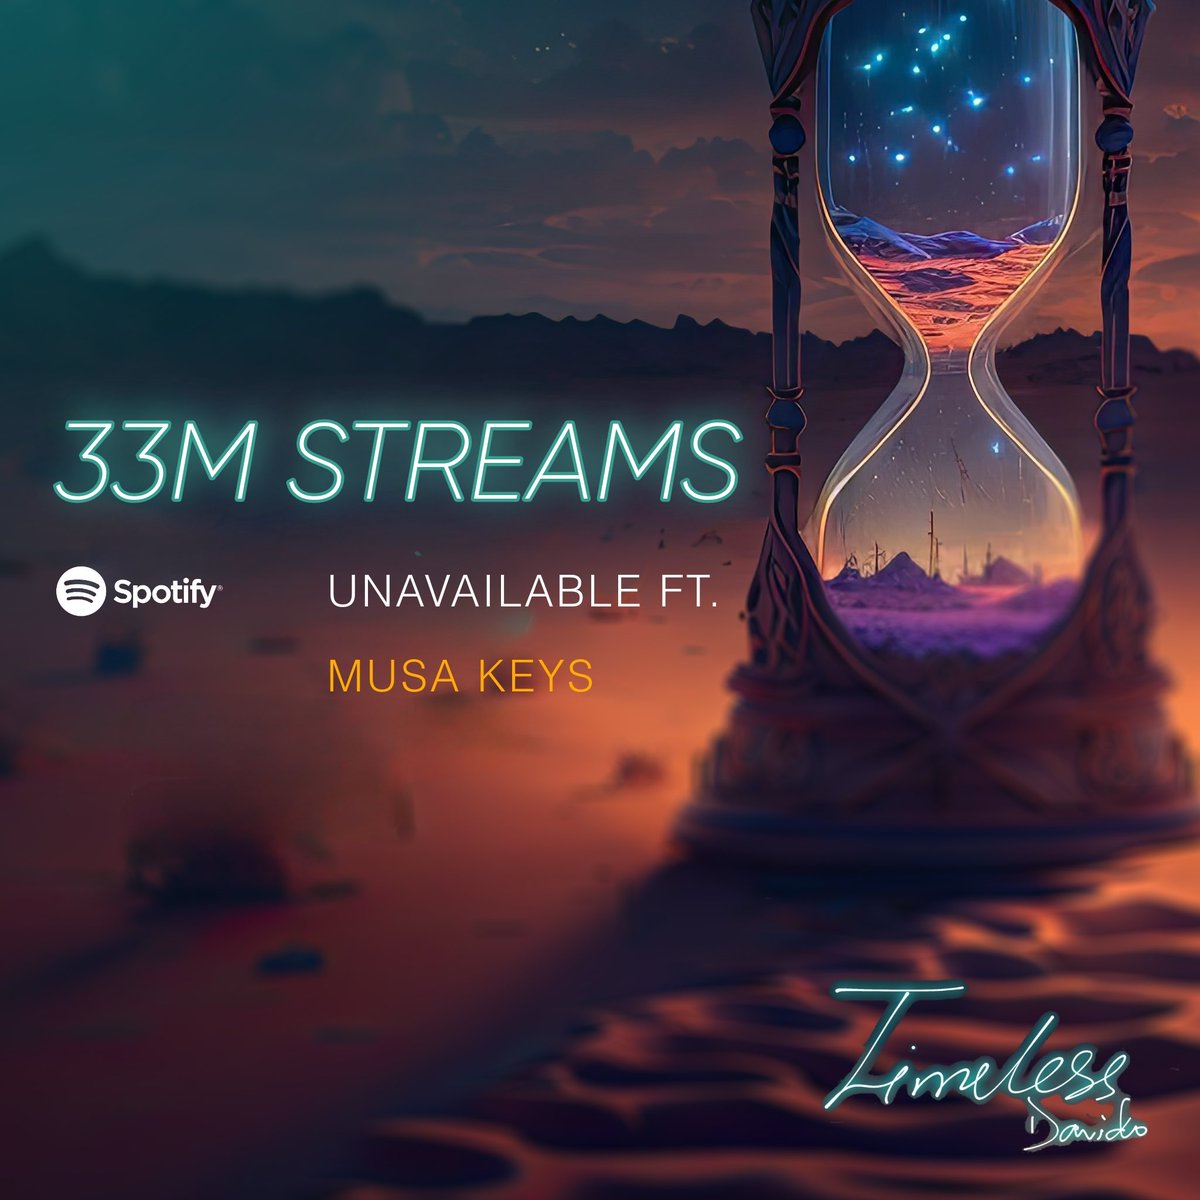 .@davido’s “Unavailable” w/@MusaKeyss has surpassed 33 million streams on Spotify.